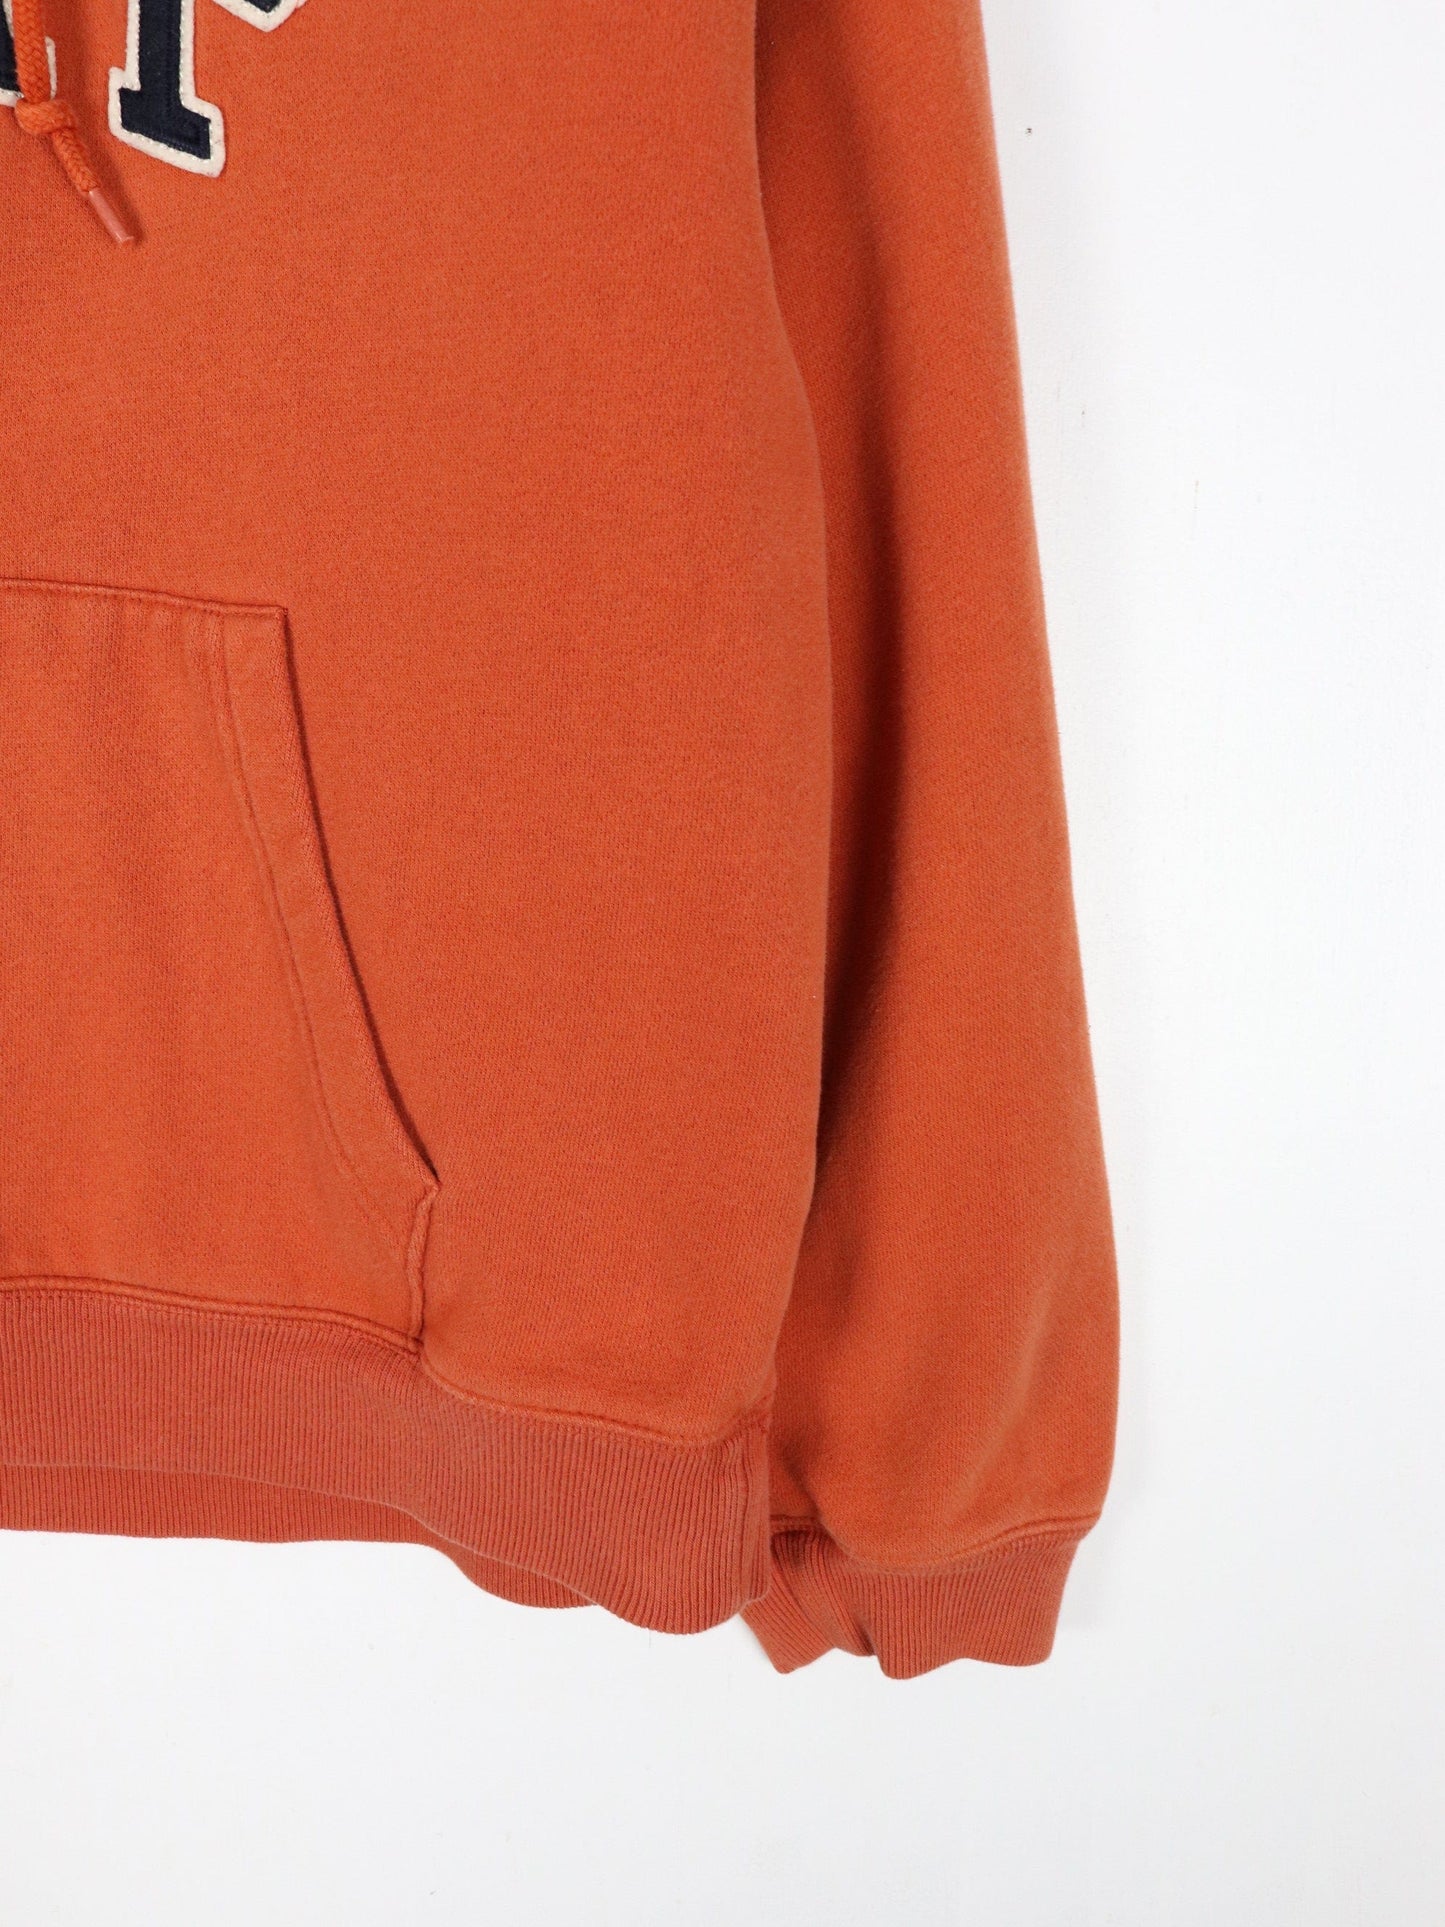 Gap Sweatshirts & Hoodies Gap Sweatshirt Womens Medium Orange Hoodie